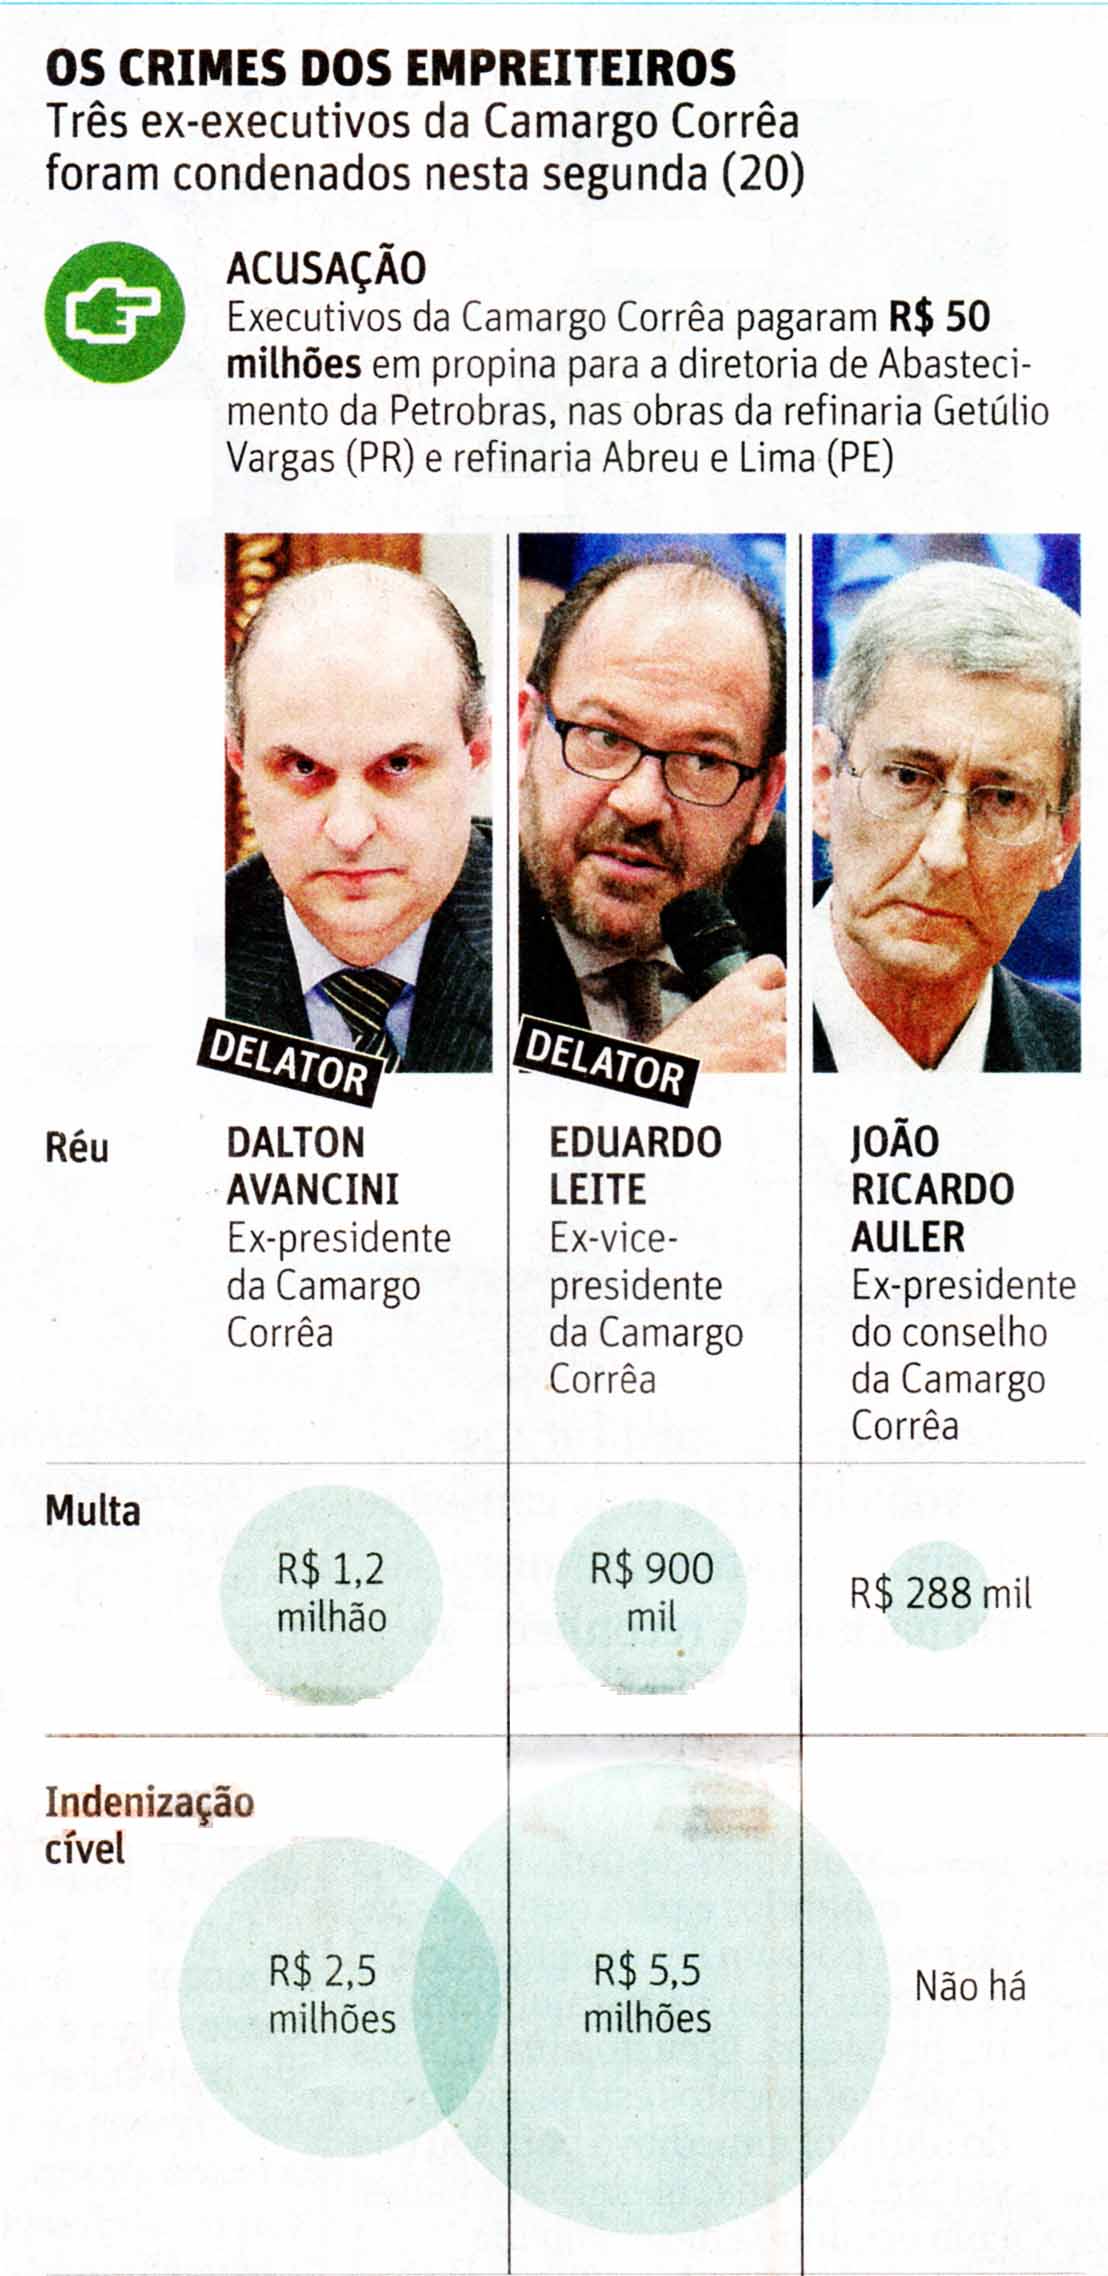 Folha de So Paulo - 21/07/15 - Lava Jato: Os crimes dos empreiteiros